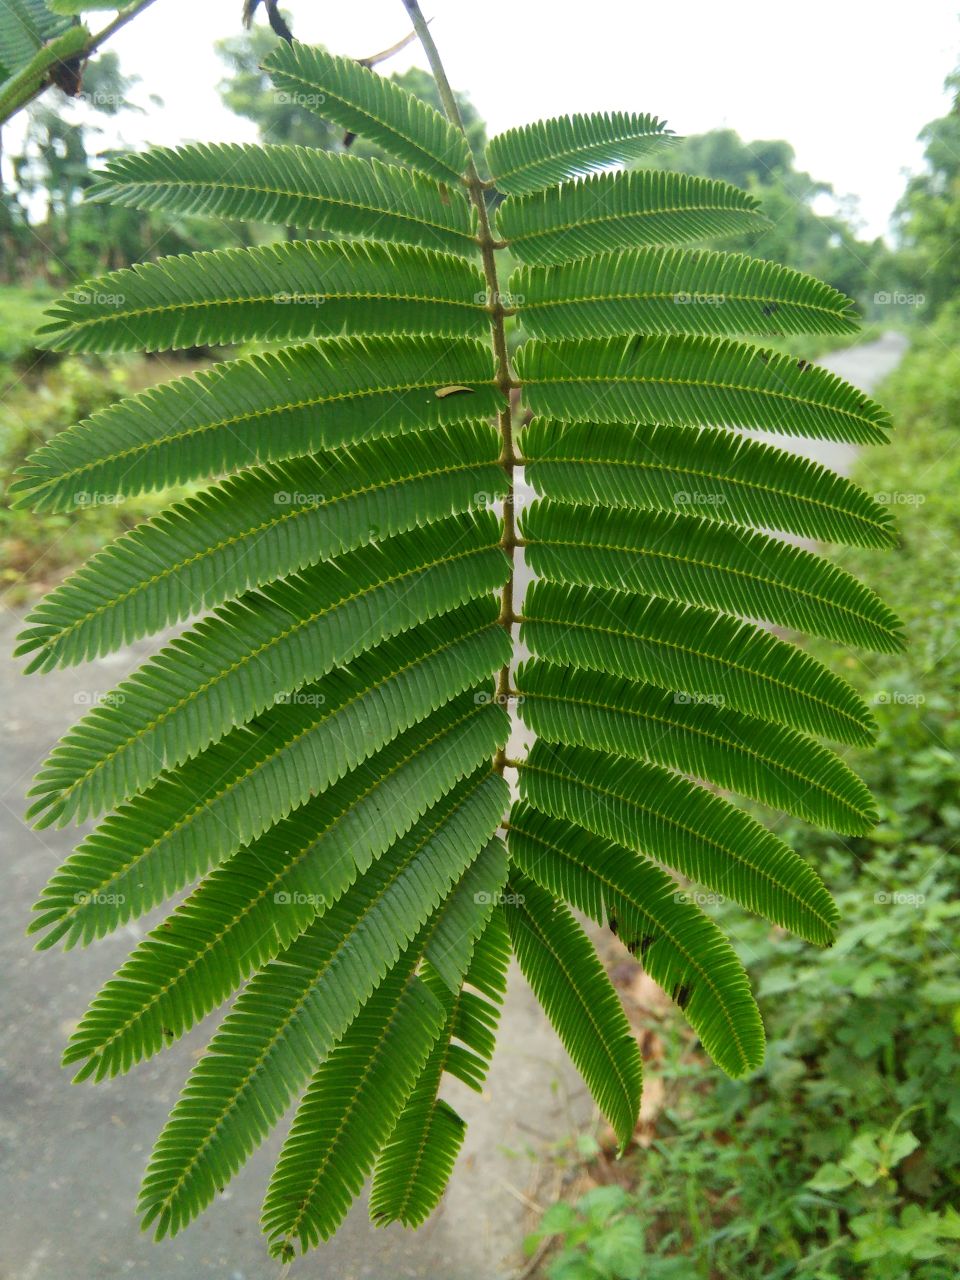 Nature  leaf